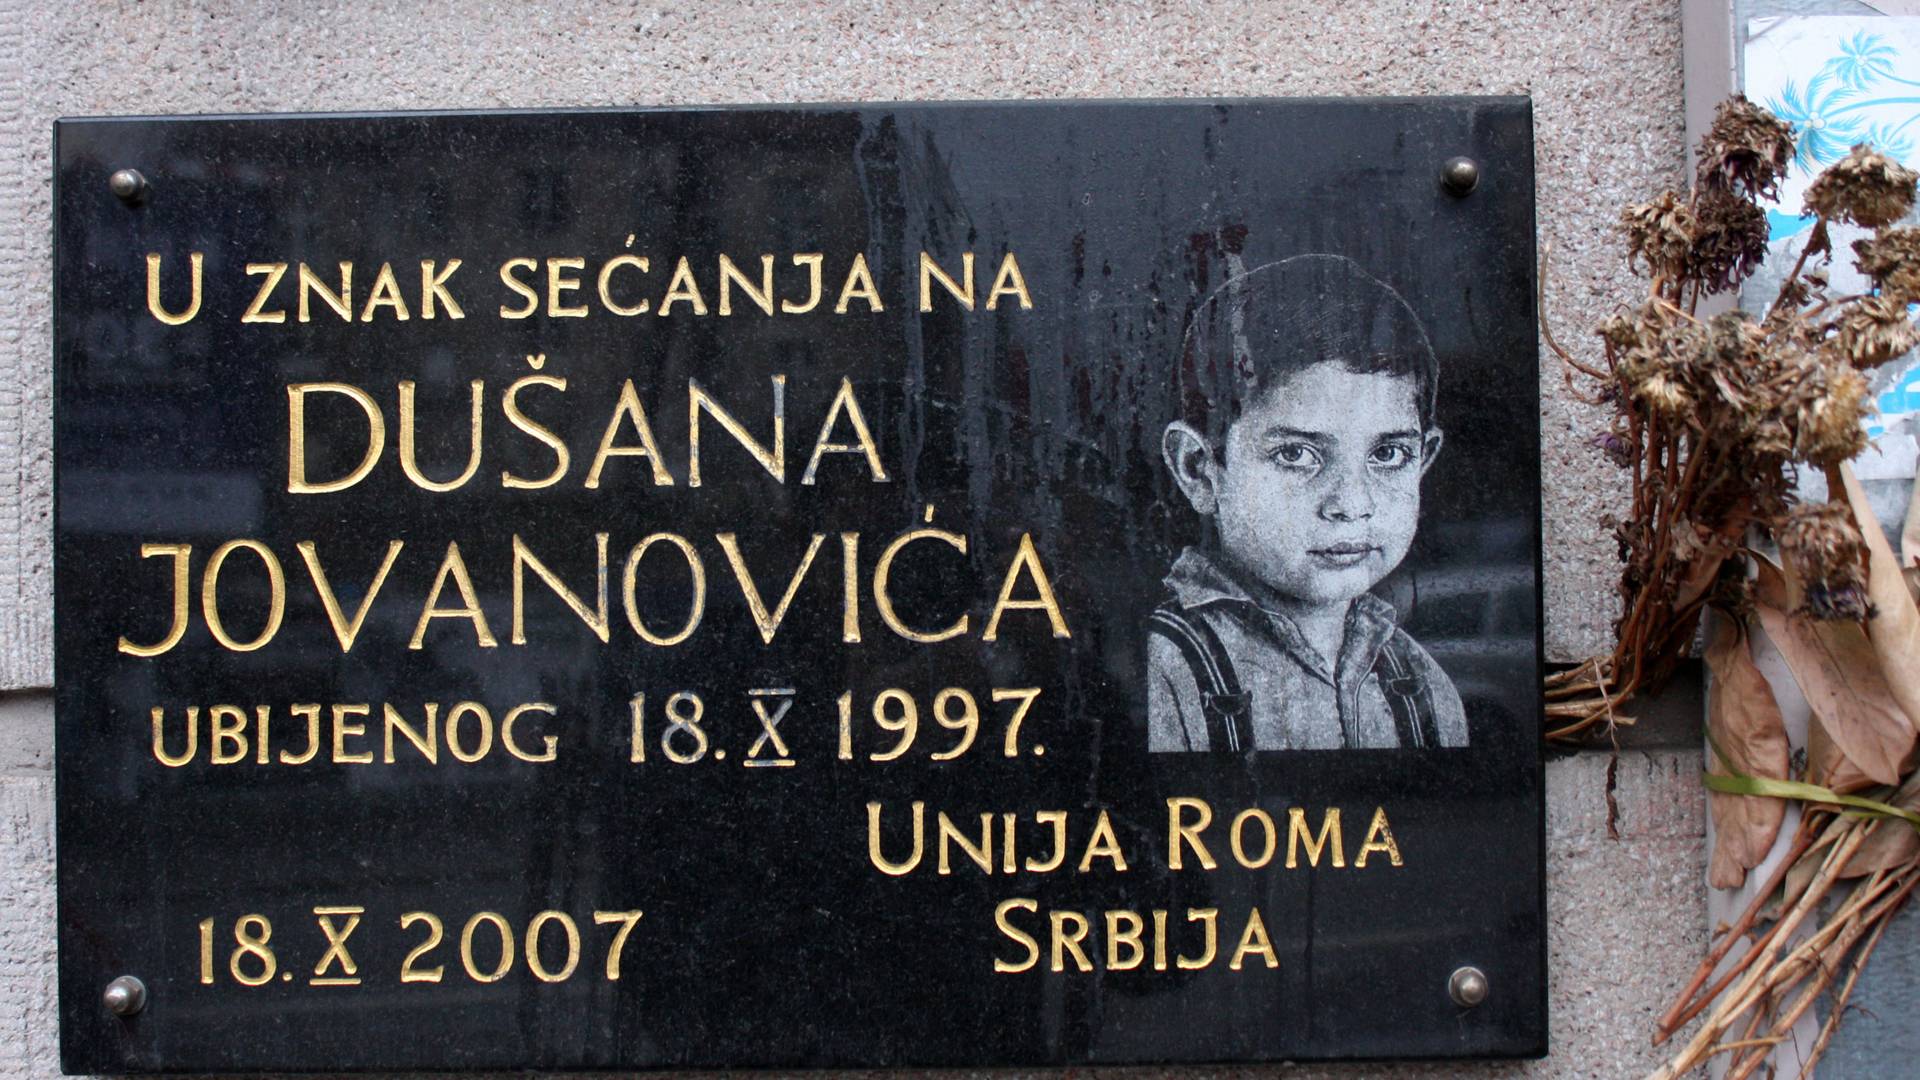 Mali Dušan je pre 23 godine brutalno ubijen kada je otišao po sok - cela Srbija se i danas stidi zbog ovoga